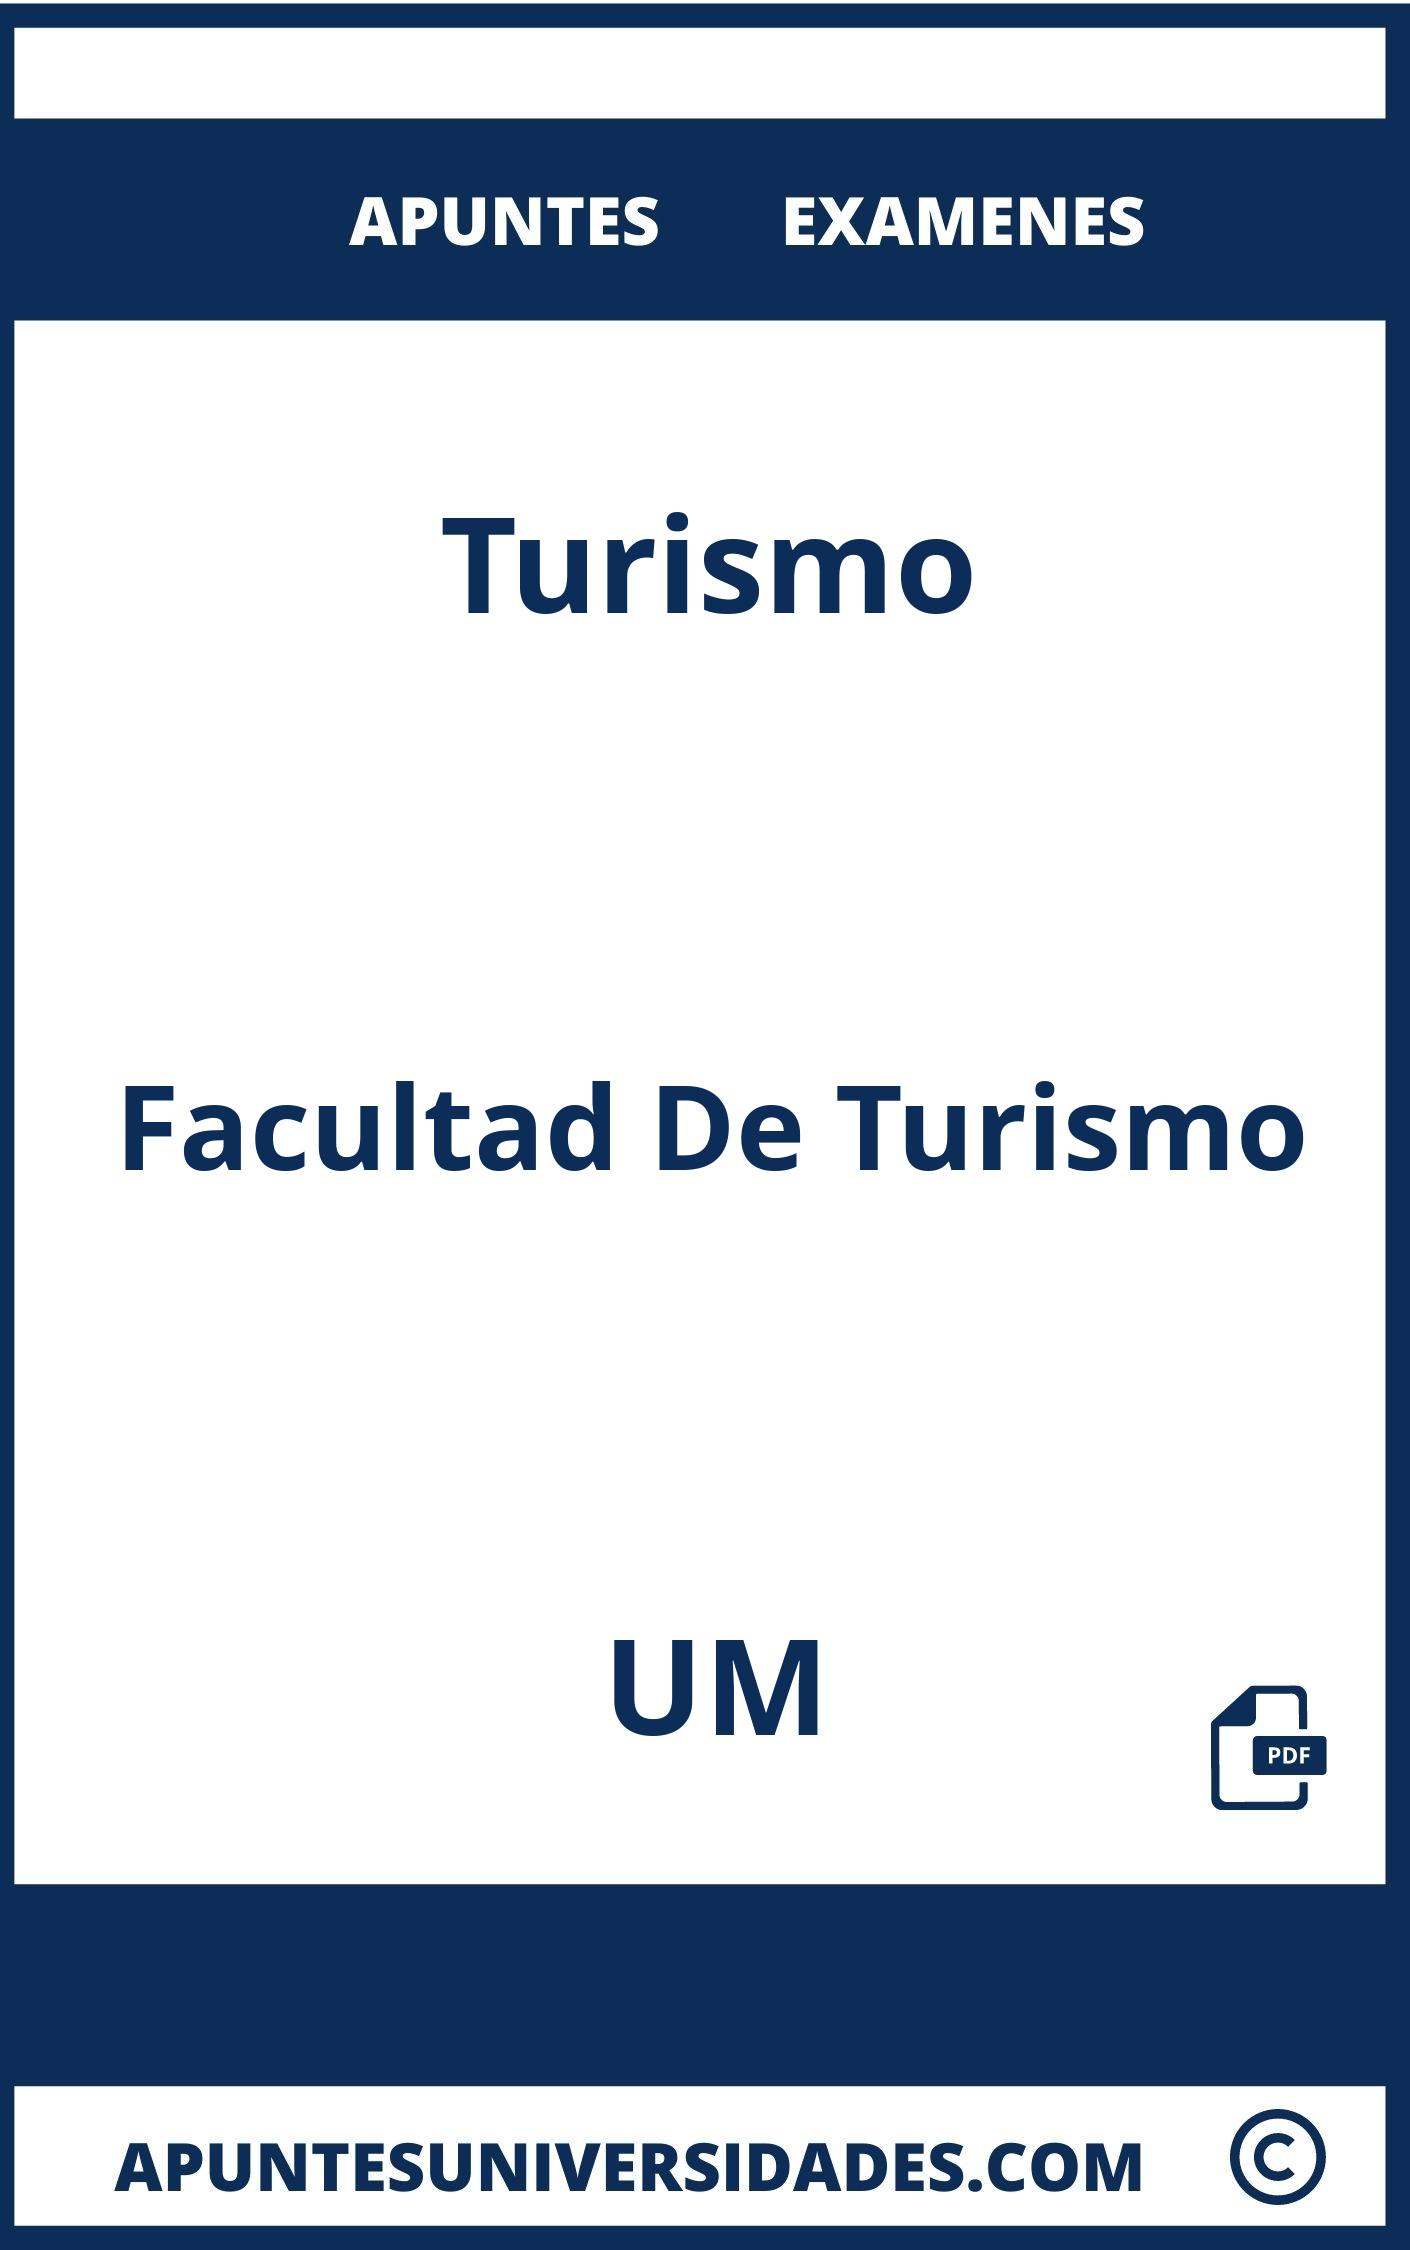 Turismo UM Examenes Apuntes